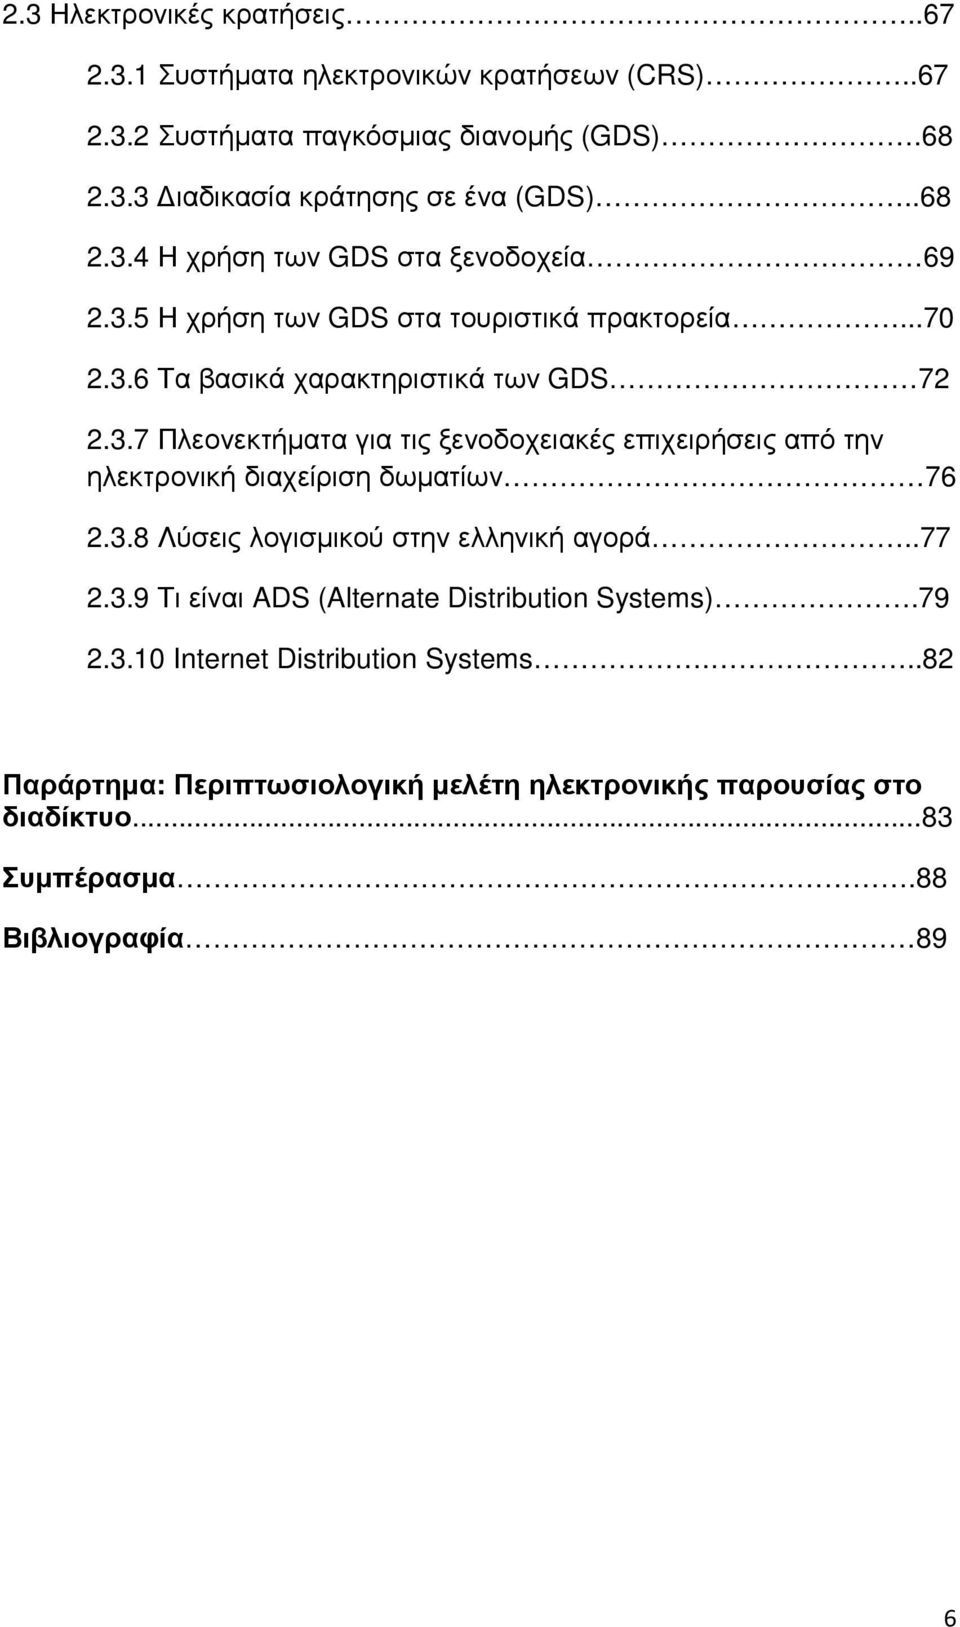 3.8 Λύσεις λογισµικού στην ελληνική αγορά..77 2.3.9 Τι είναι ADS (Alternate Distribution Systems).79 2.3.10 Internet Distribution Systems.